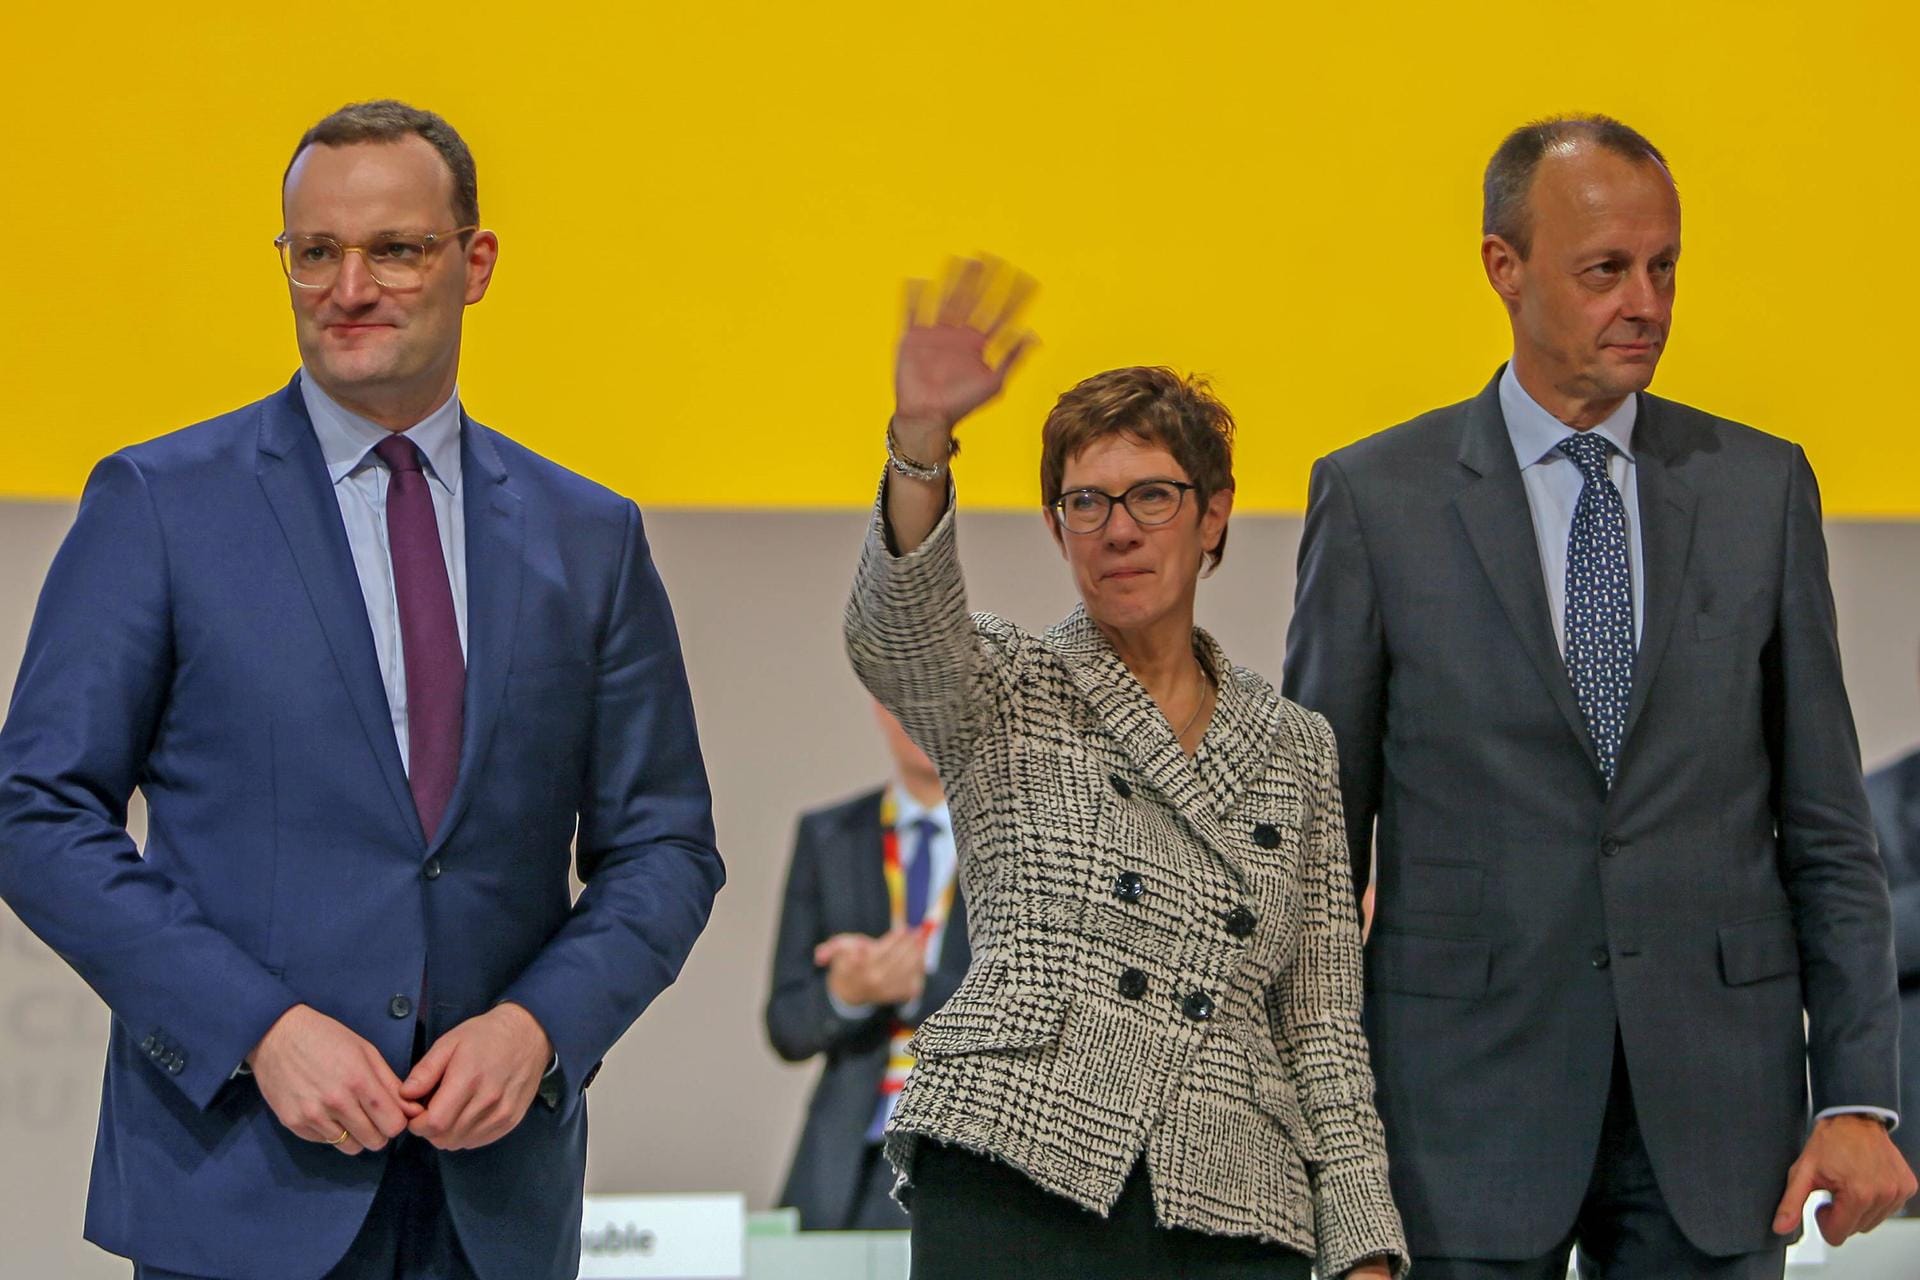 7. Dezember 2018: Die bisherige Generalsekretärin Annegret Kramp-Karrenbauer wird zur neuen CDU-Chefin gewählt, ihr Gegner Friedrich Merz unterliegt knapp. In Umfragen legt sie zunächst deutlich zu. (Bild von Dezember 2018)